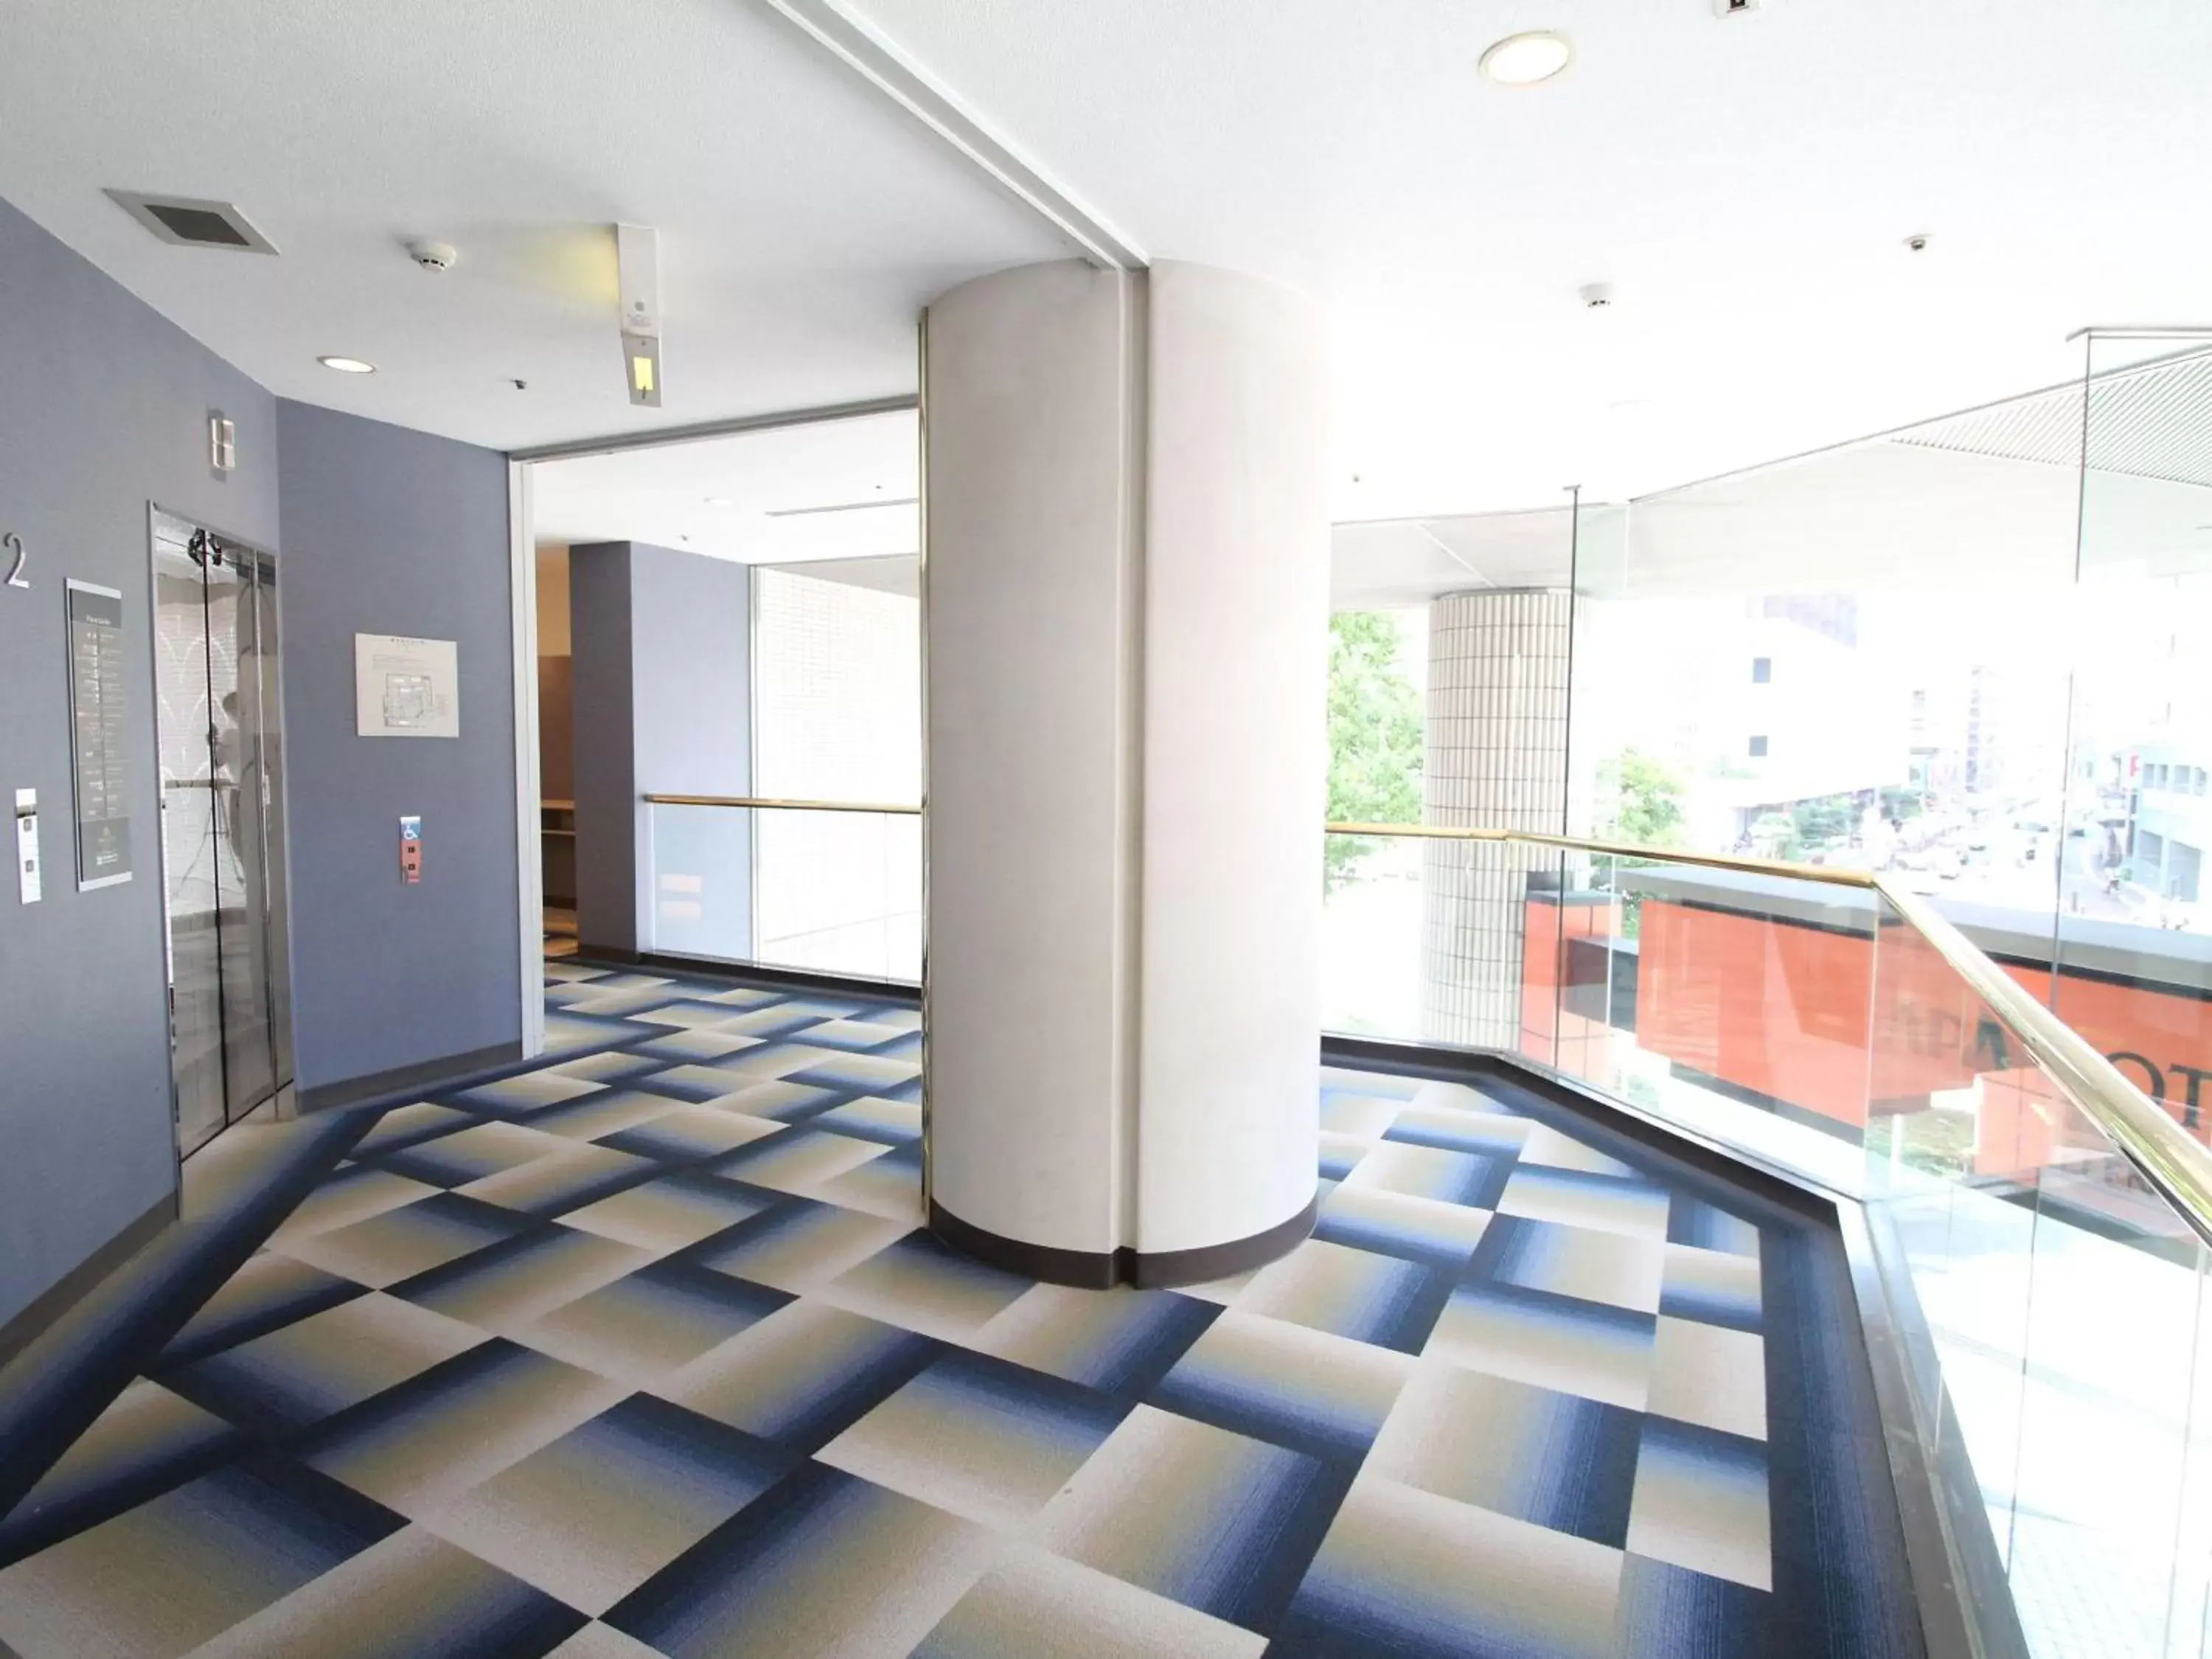 Lobby or reception, Lobby/Reception in APA Hotel Fukuoka Watanabe Dori EXCELLENT